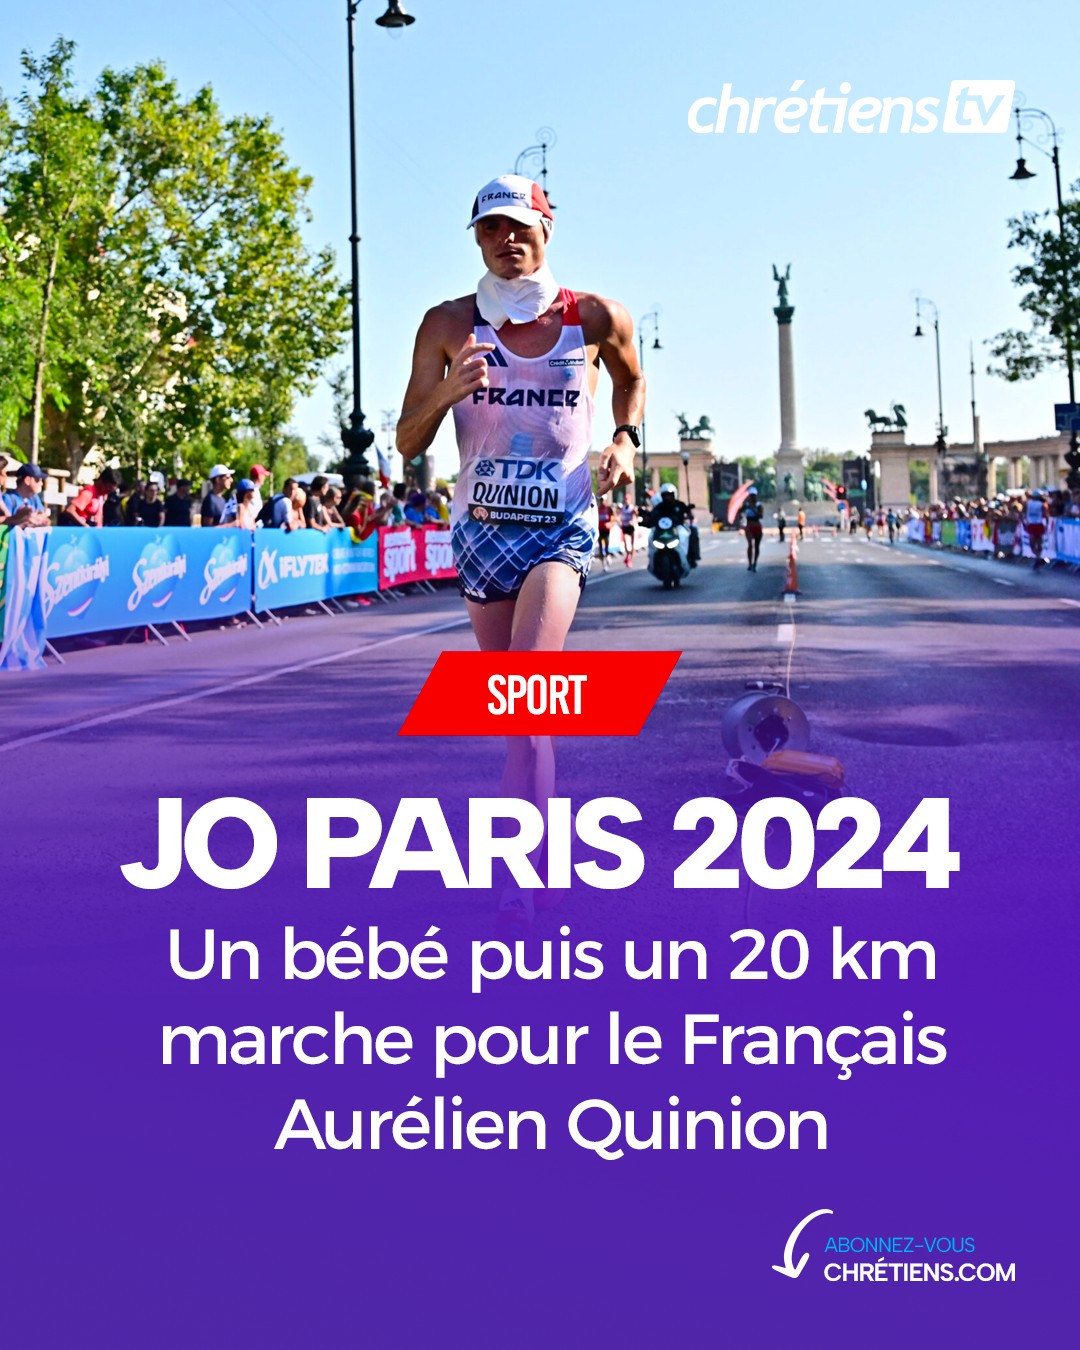 Le Français Aurélien Quinion lors des Championnats du monde d'athlétisme à Budapest, en Hongrie. /Photo prise le 24 août 2023/REUTERS/Marton Monus